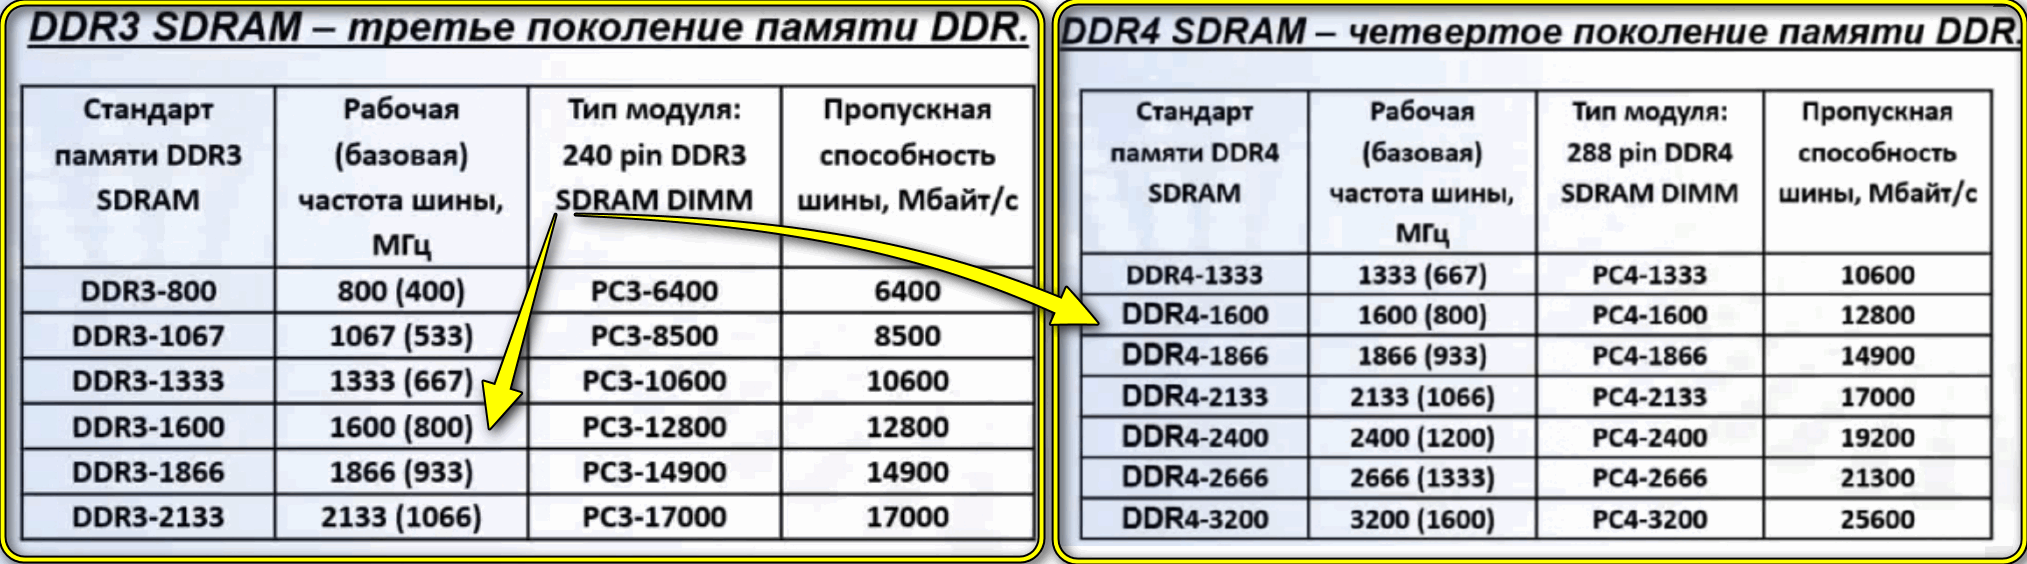 Как поставить 3 планки оперативной памяти ddr3. Как узнать частоту оперативной памяти на планке. Как узнать частоту оперативной памяти на компьютере. Совместимость стандартов DDR.